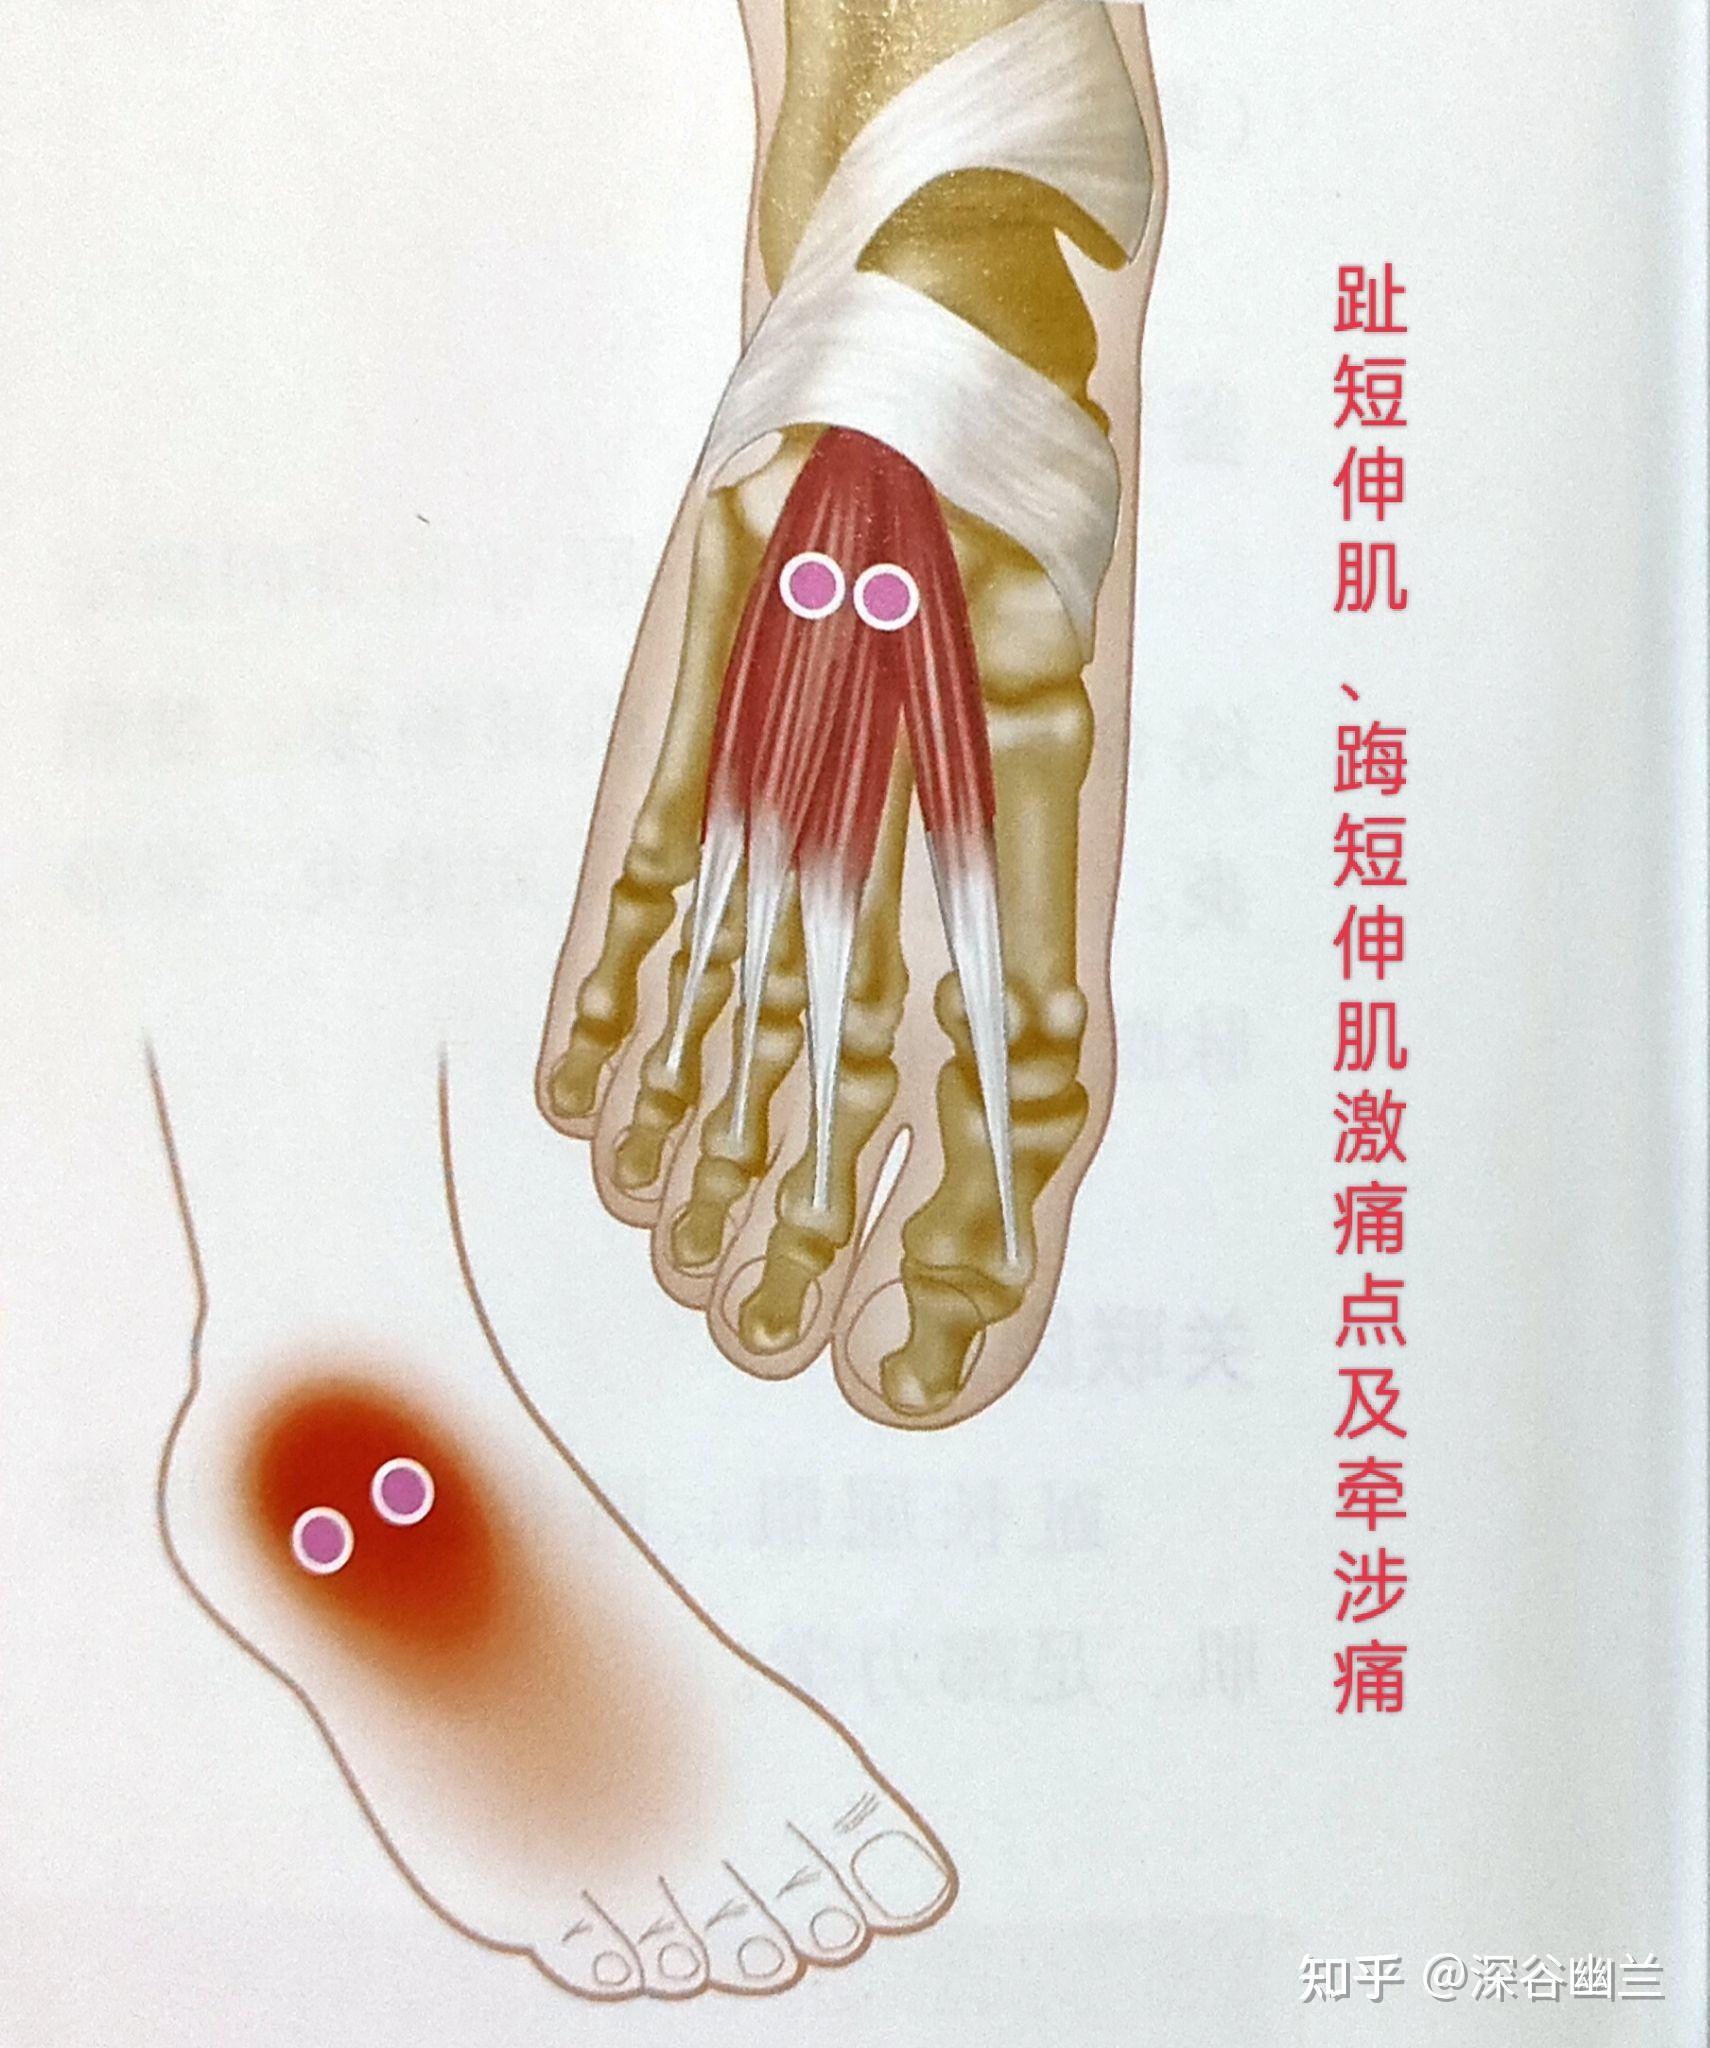 足趾伸肌包括踇短伸肌和趾短伸肌,它们的激痛点牵涉痛在脚背外踝下方4